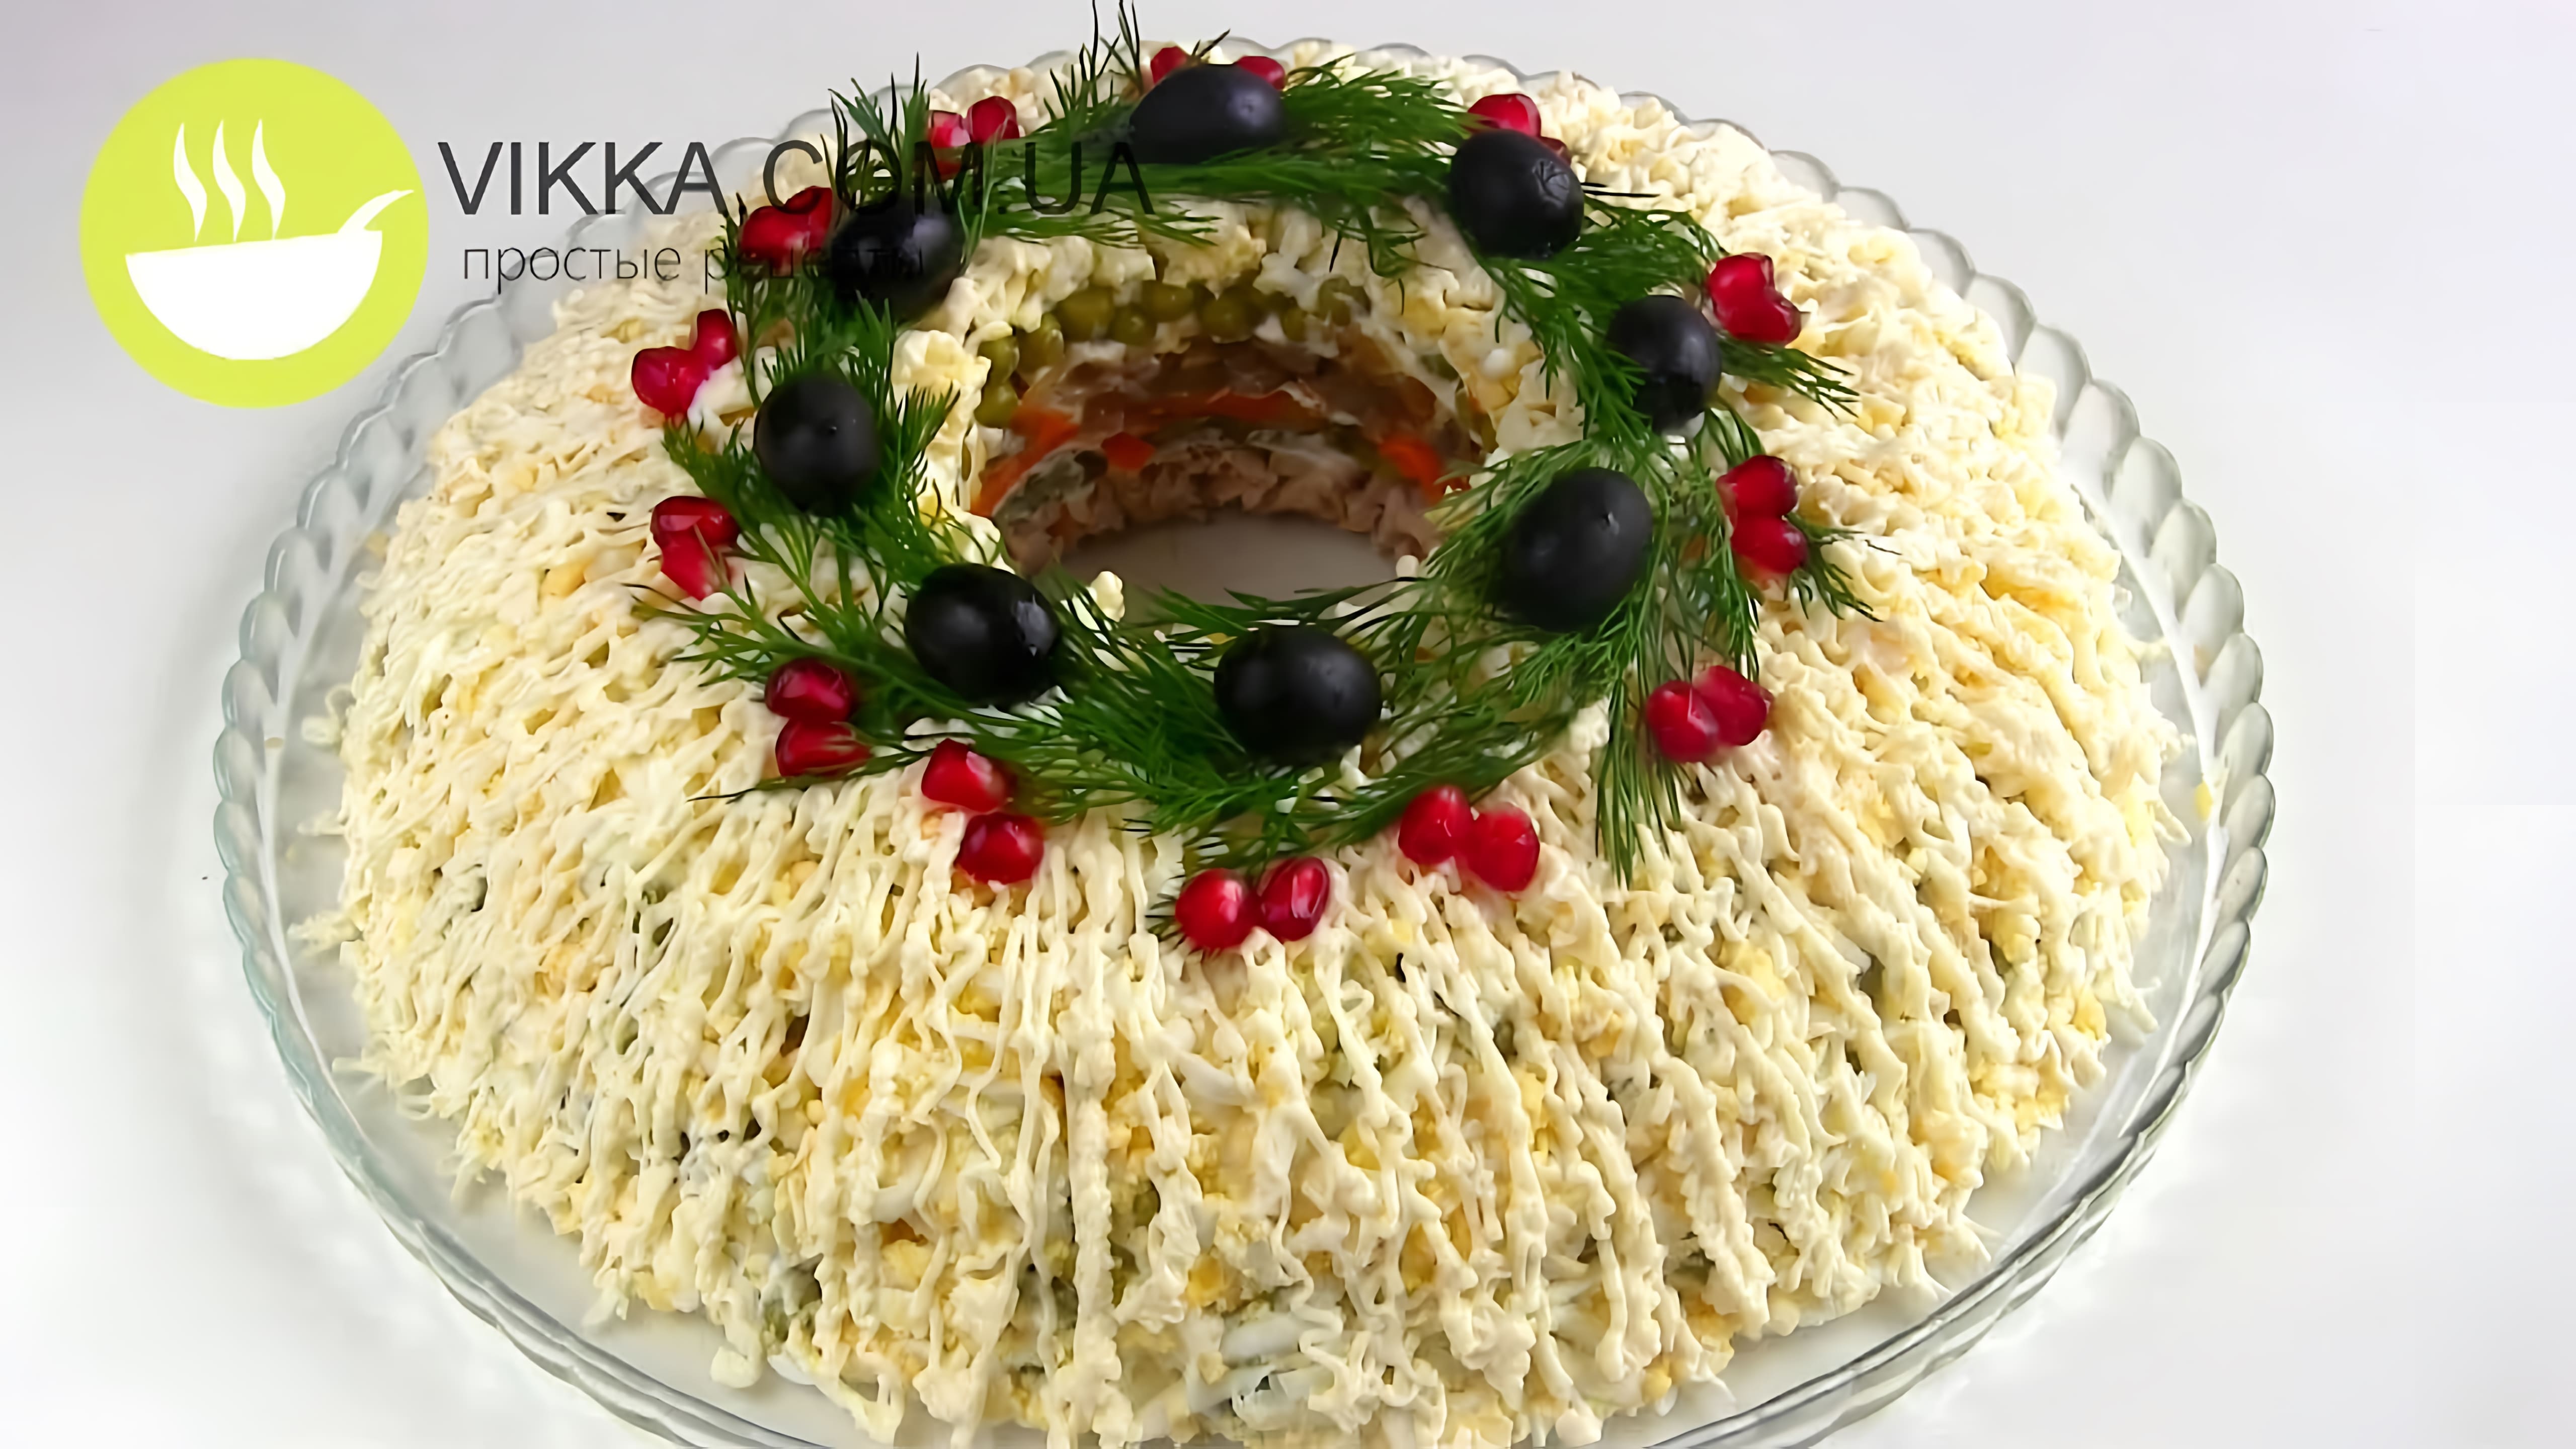 Видео: Салат  на Новый Год «Купеческий».  ПРАЗДНИЧНЫЙ мясной салат